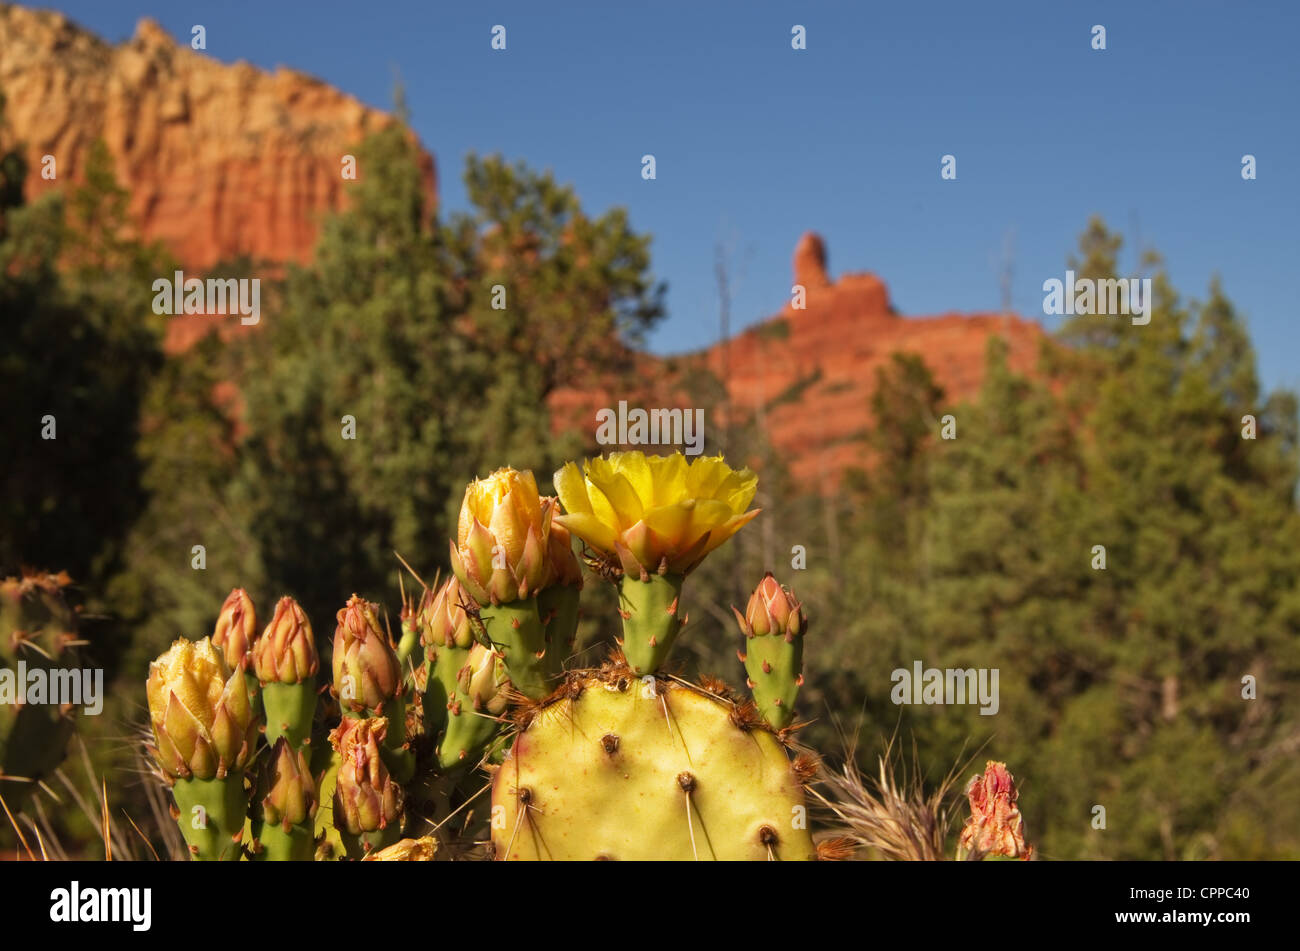 Yellow cactus flower près de Sedona avec le vert des arbres et des roches rouges de l'arrière-plan n'est pas mise au point Banque D'Images